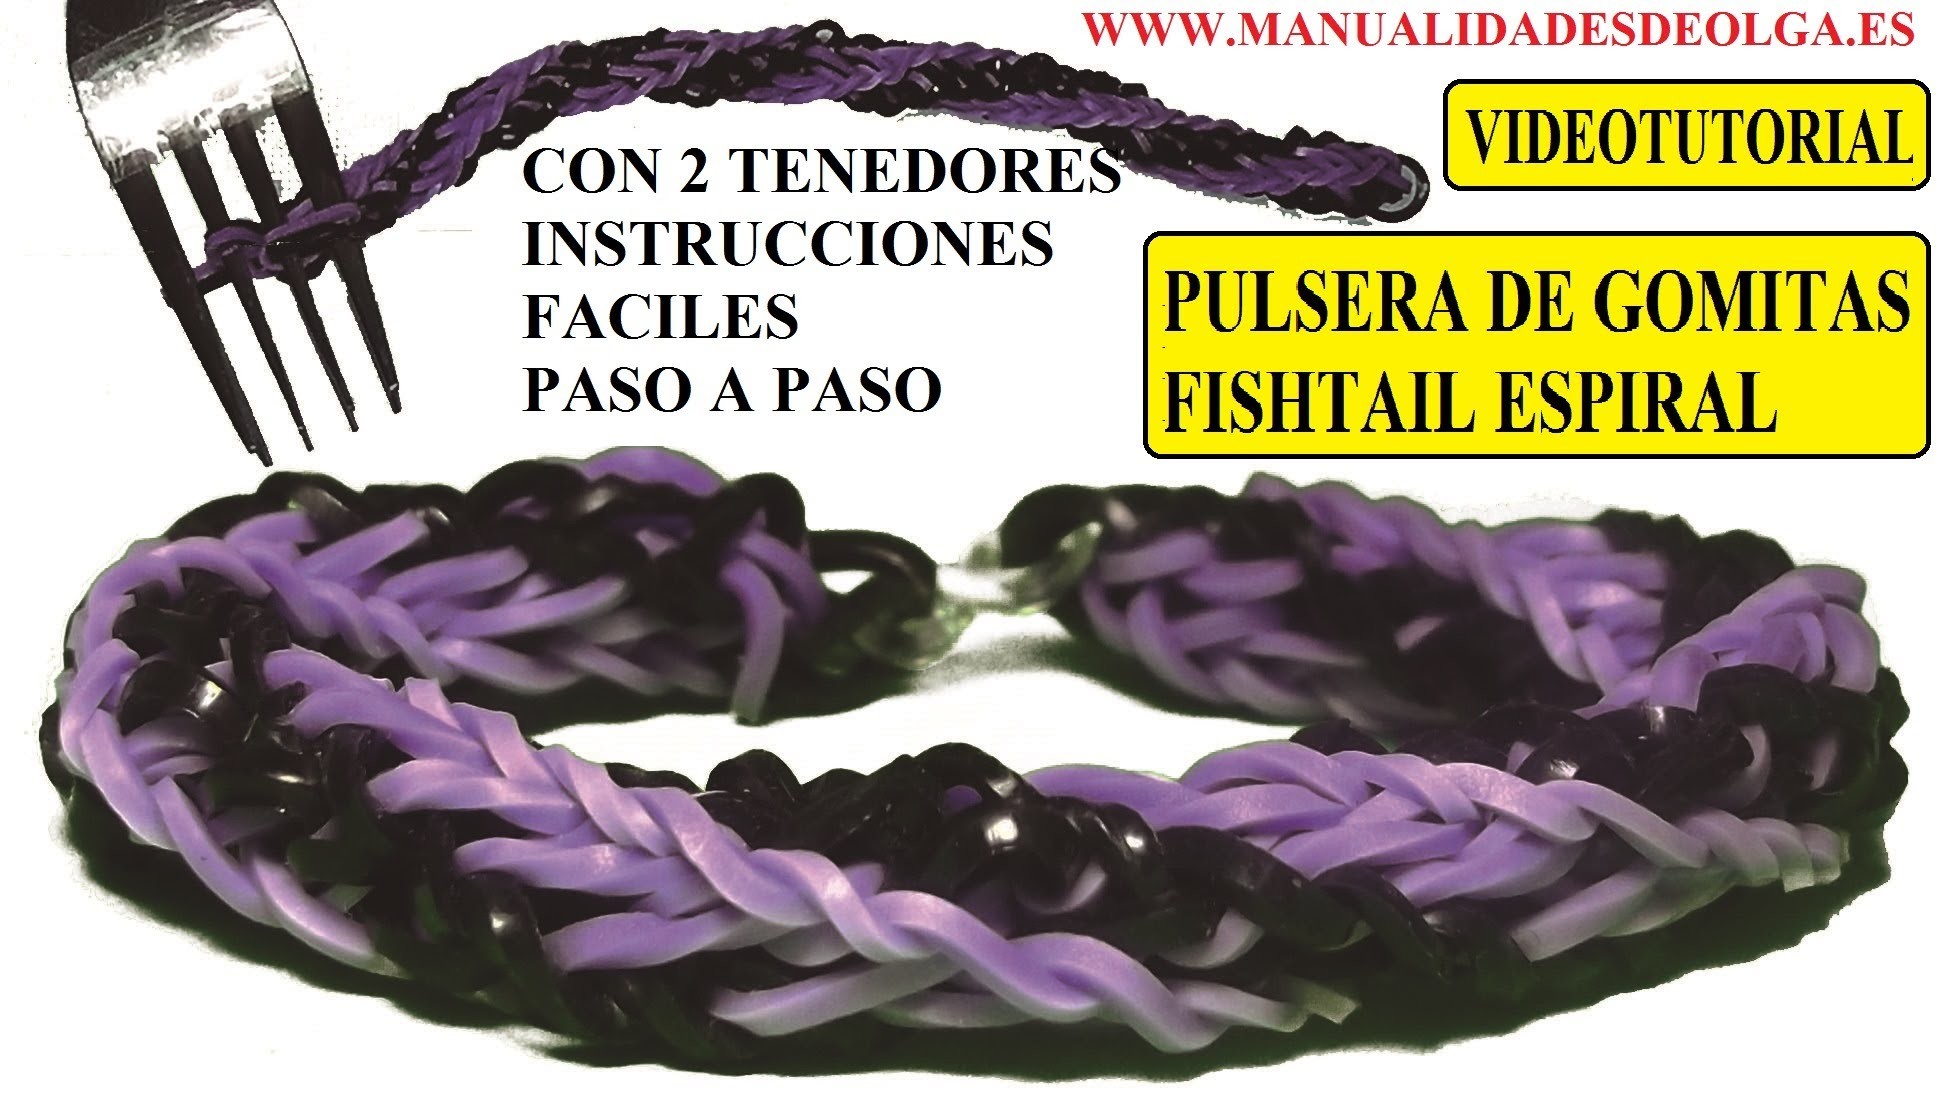 COMO HACER PULSERA DE GOMITAS FISHTAIL ESPIRAL DOBLE TWIST CON DOS TENEDORES. VIDETUTORIAL DIY.